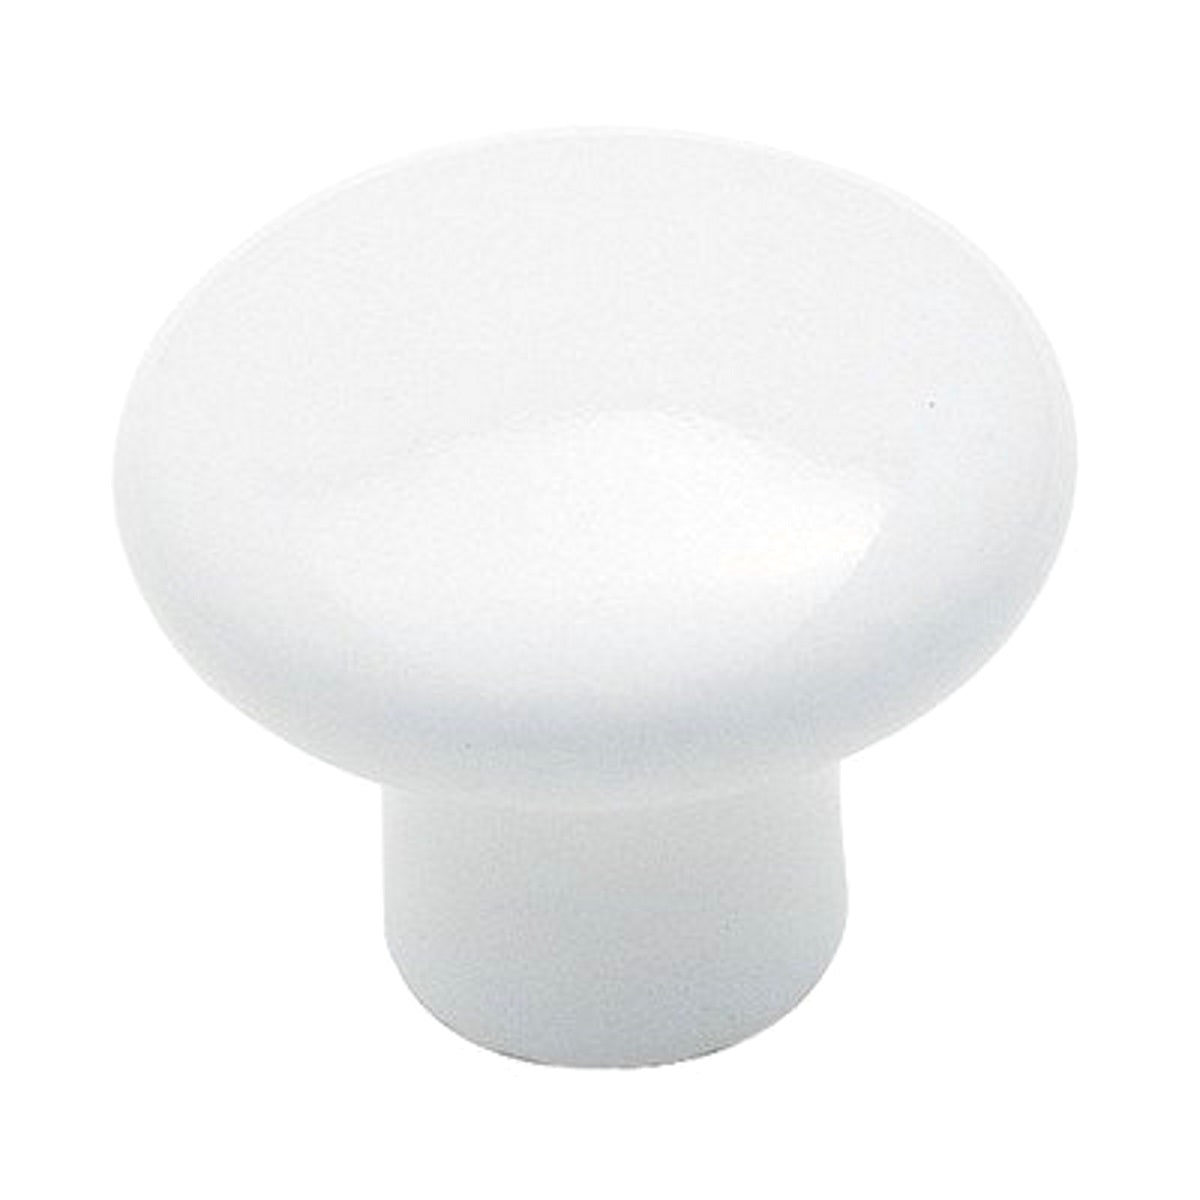 Paquete de 3 perillas de porcelana para gabinete Amerock Hardware BP70635-30, color blanco, 1 3/16 pulgadas